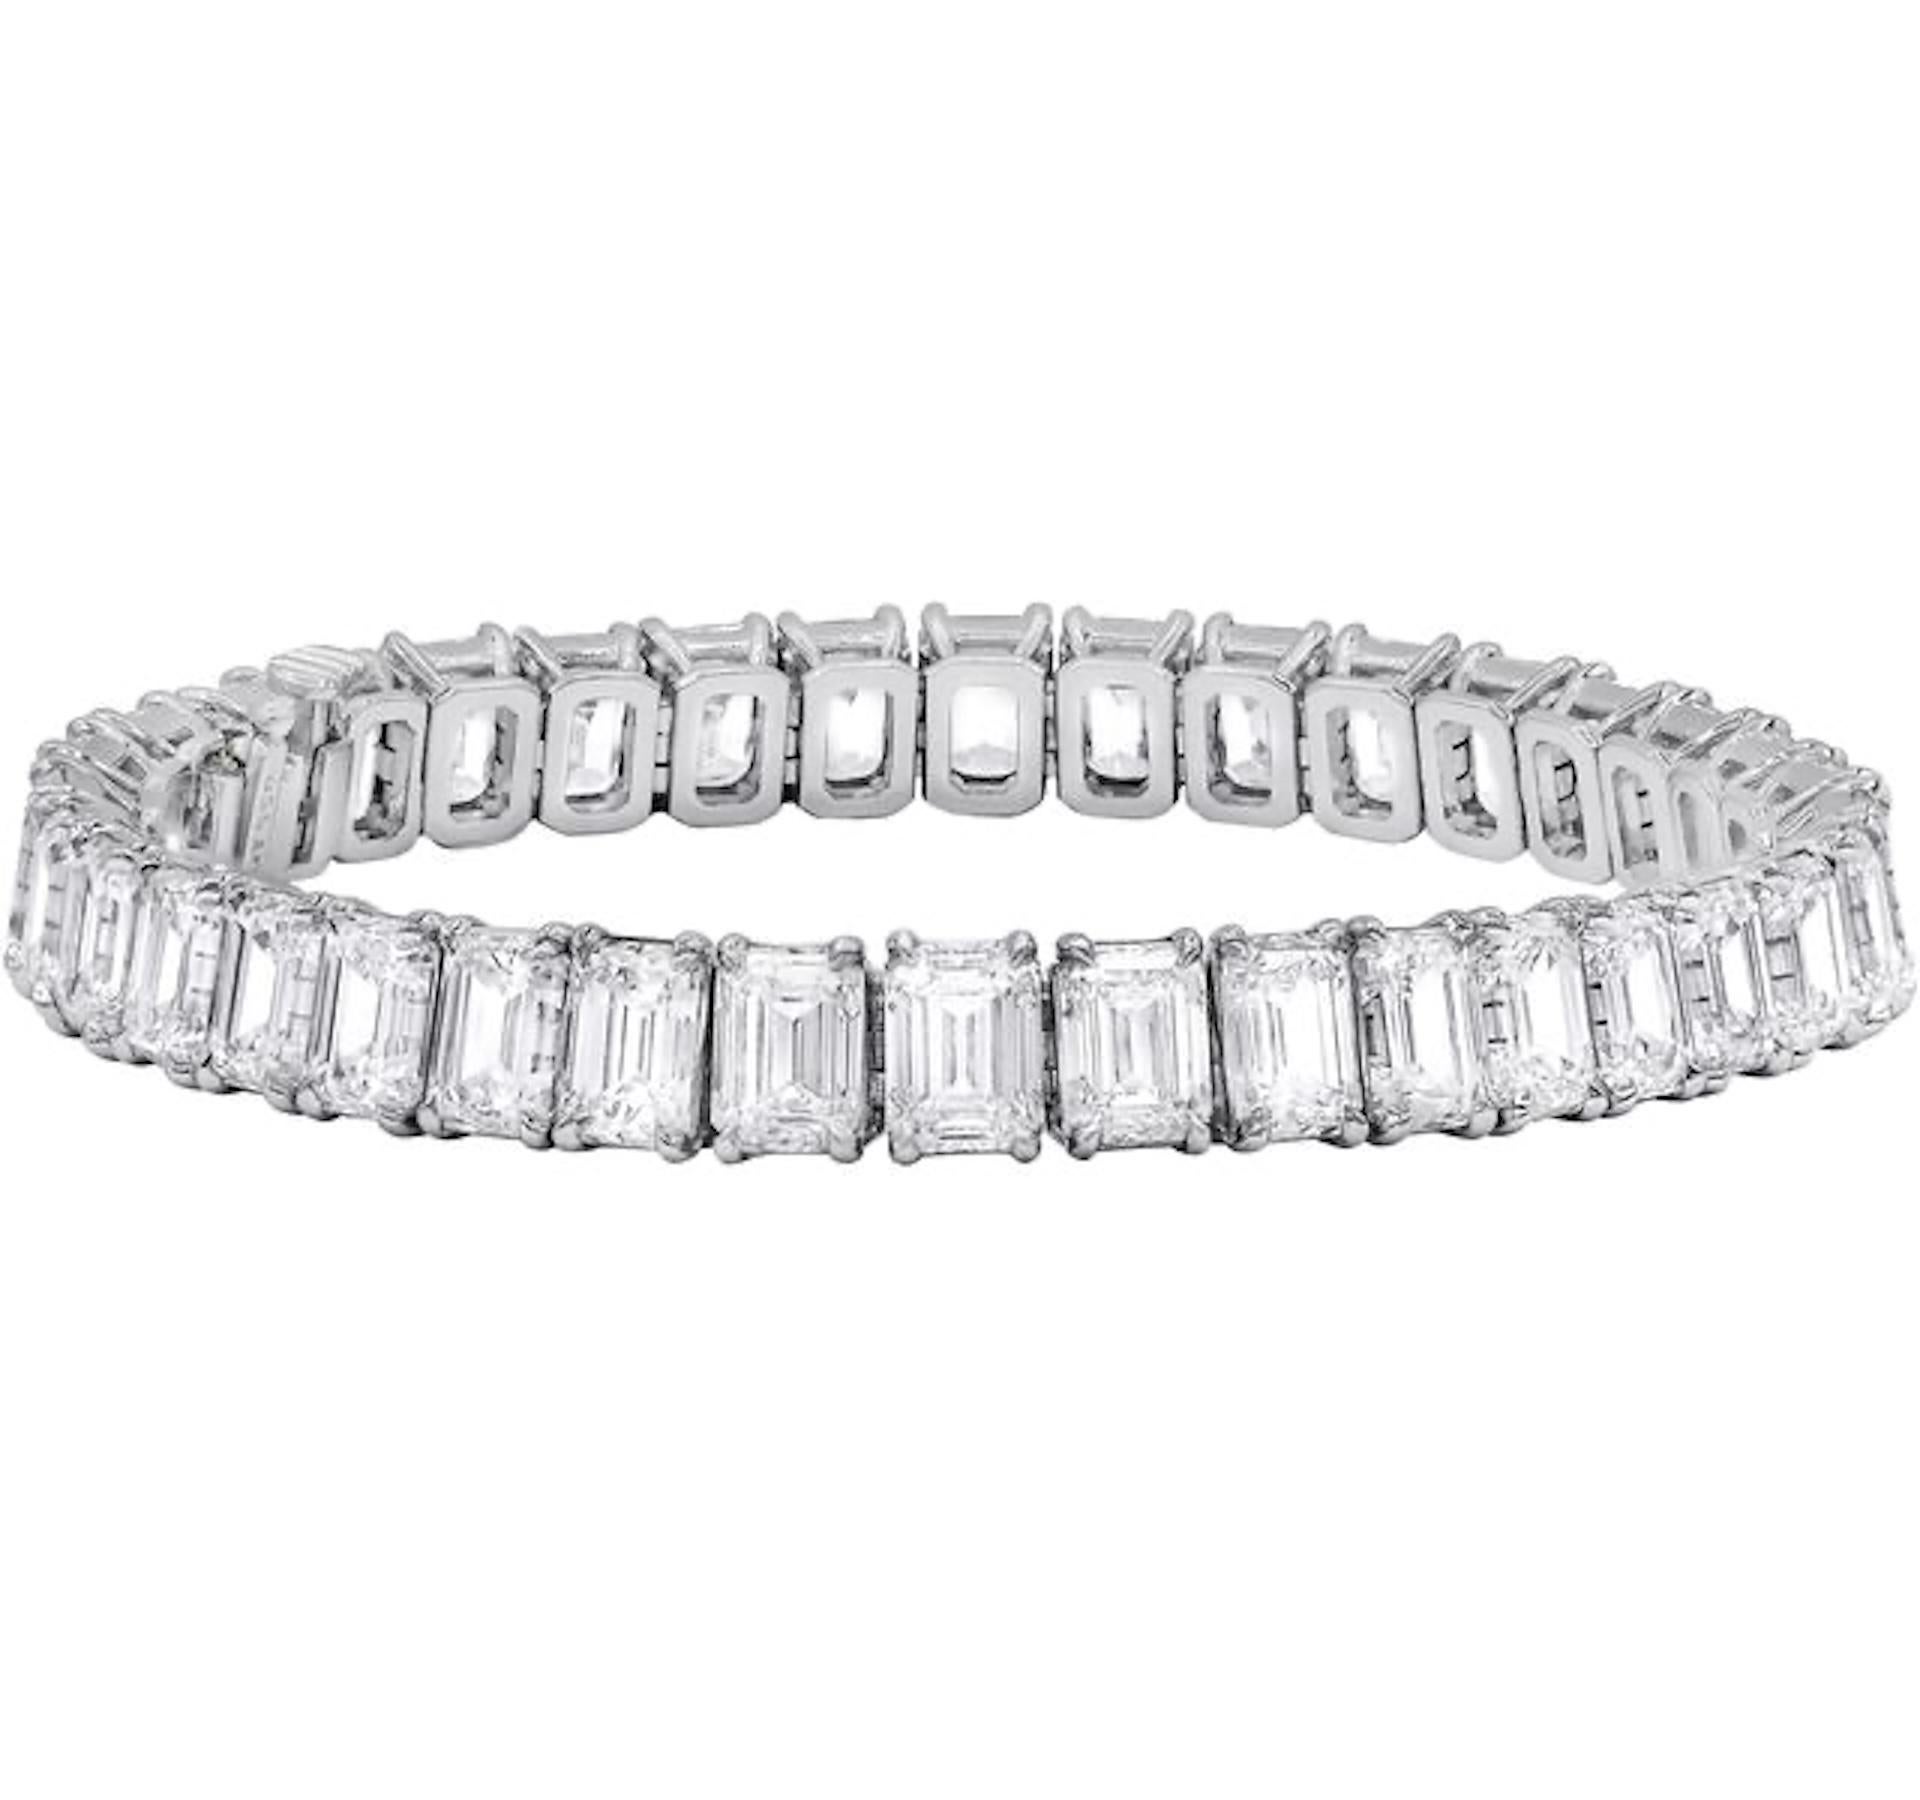 Platinum custom gold 4 prong diamond bracelet 26.97 cts 0.73 each GIA certified emerald cut diamonds DEF color, VVS-VS clarity, 37 stones.Excellent cut.